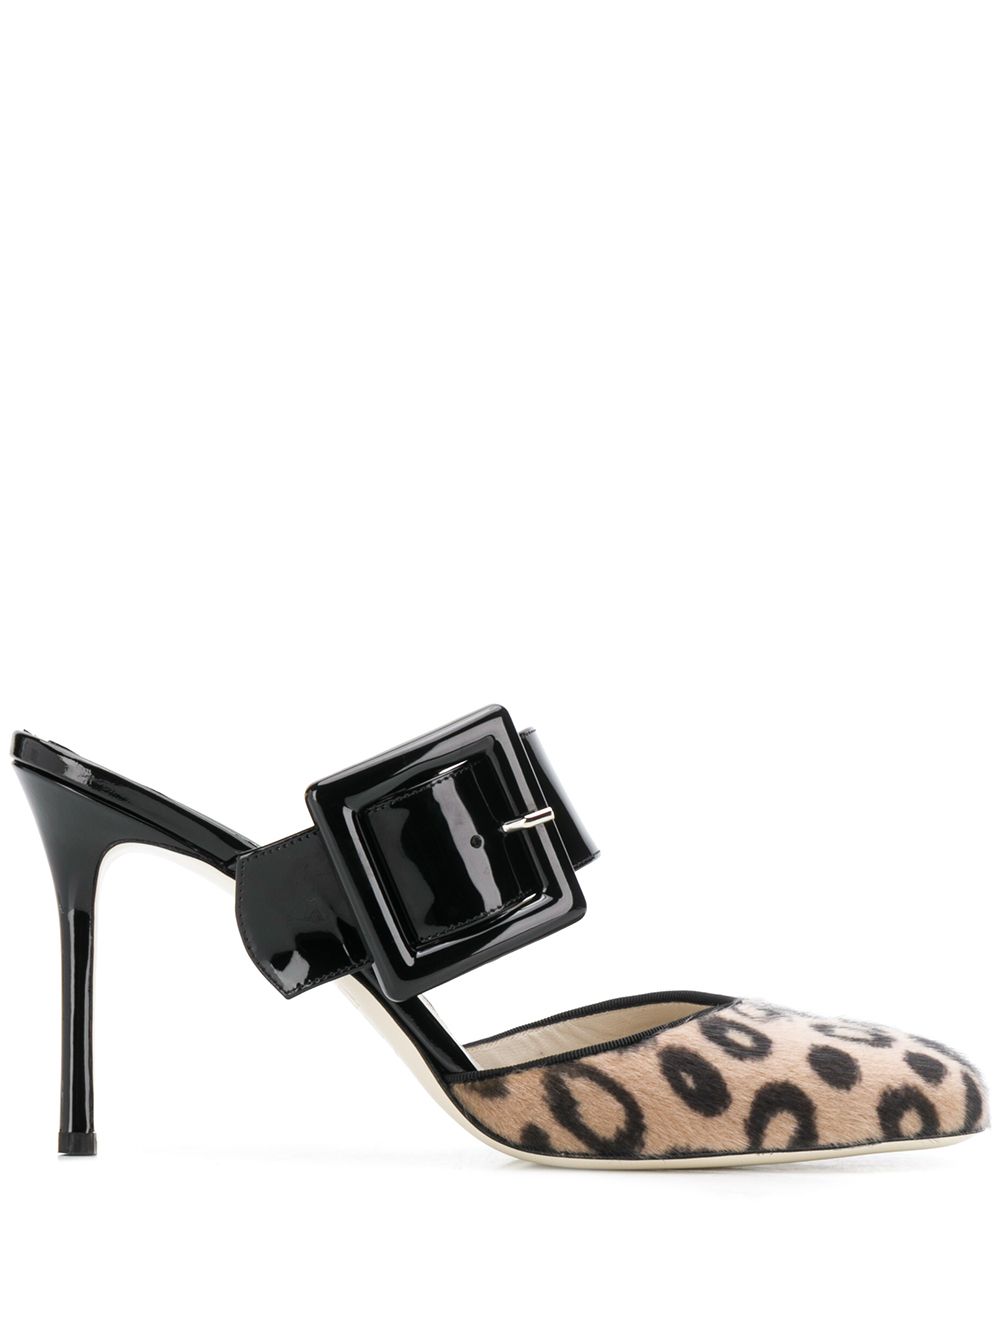 фото Francesca bellavita туфли с анималистичным принтом